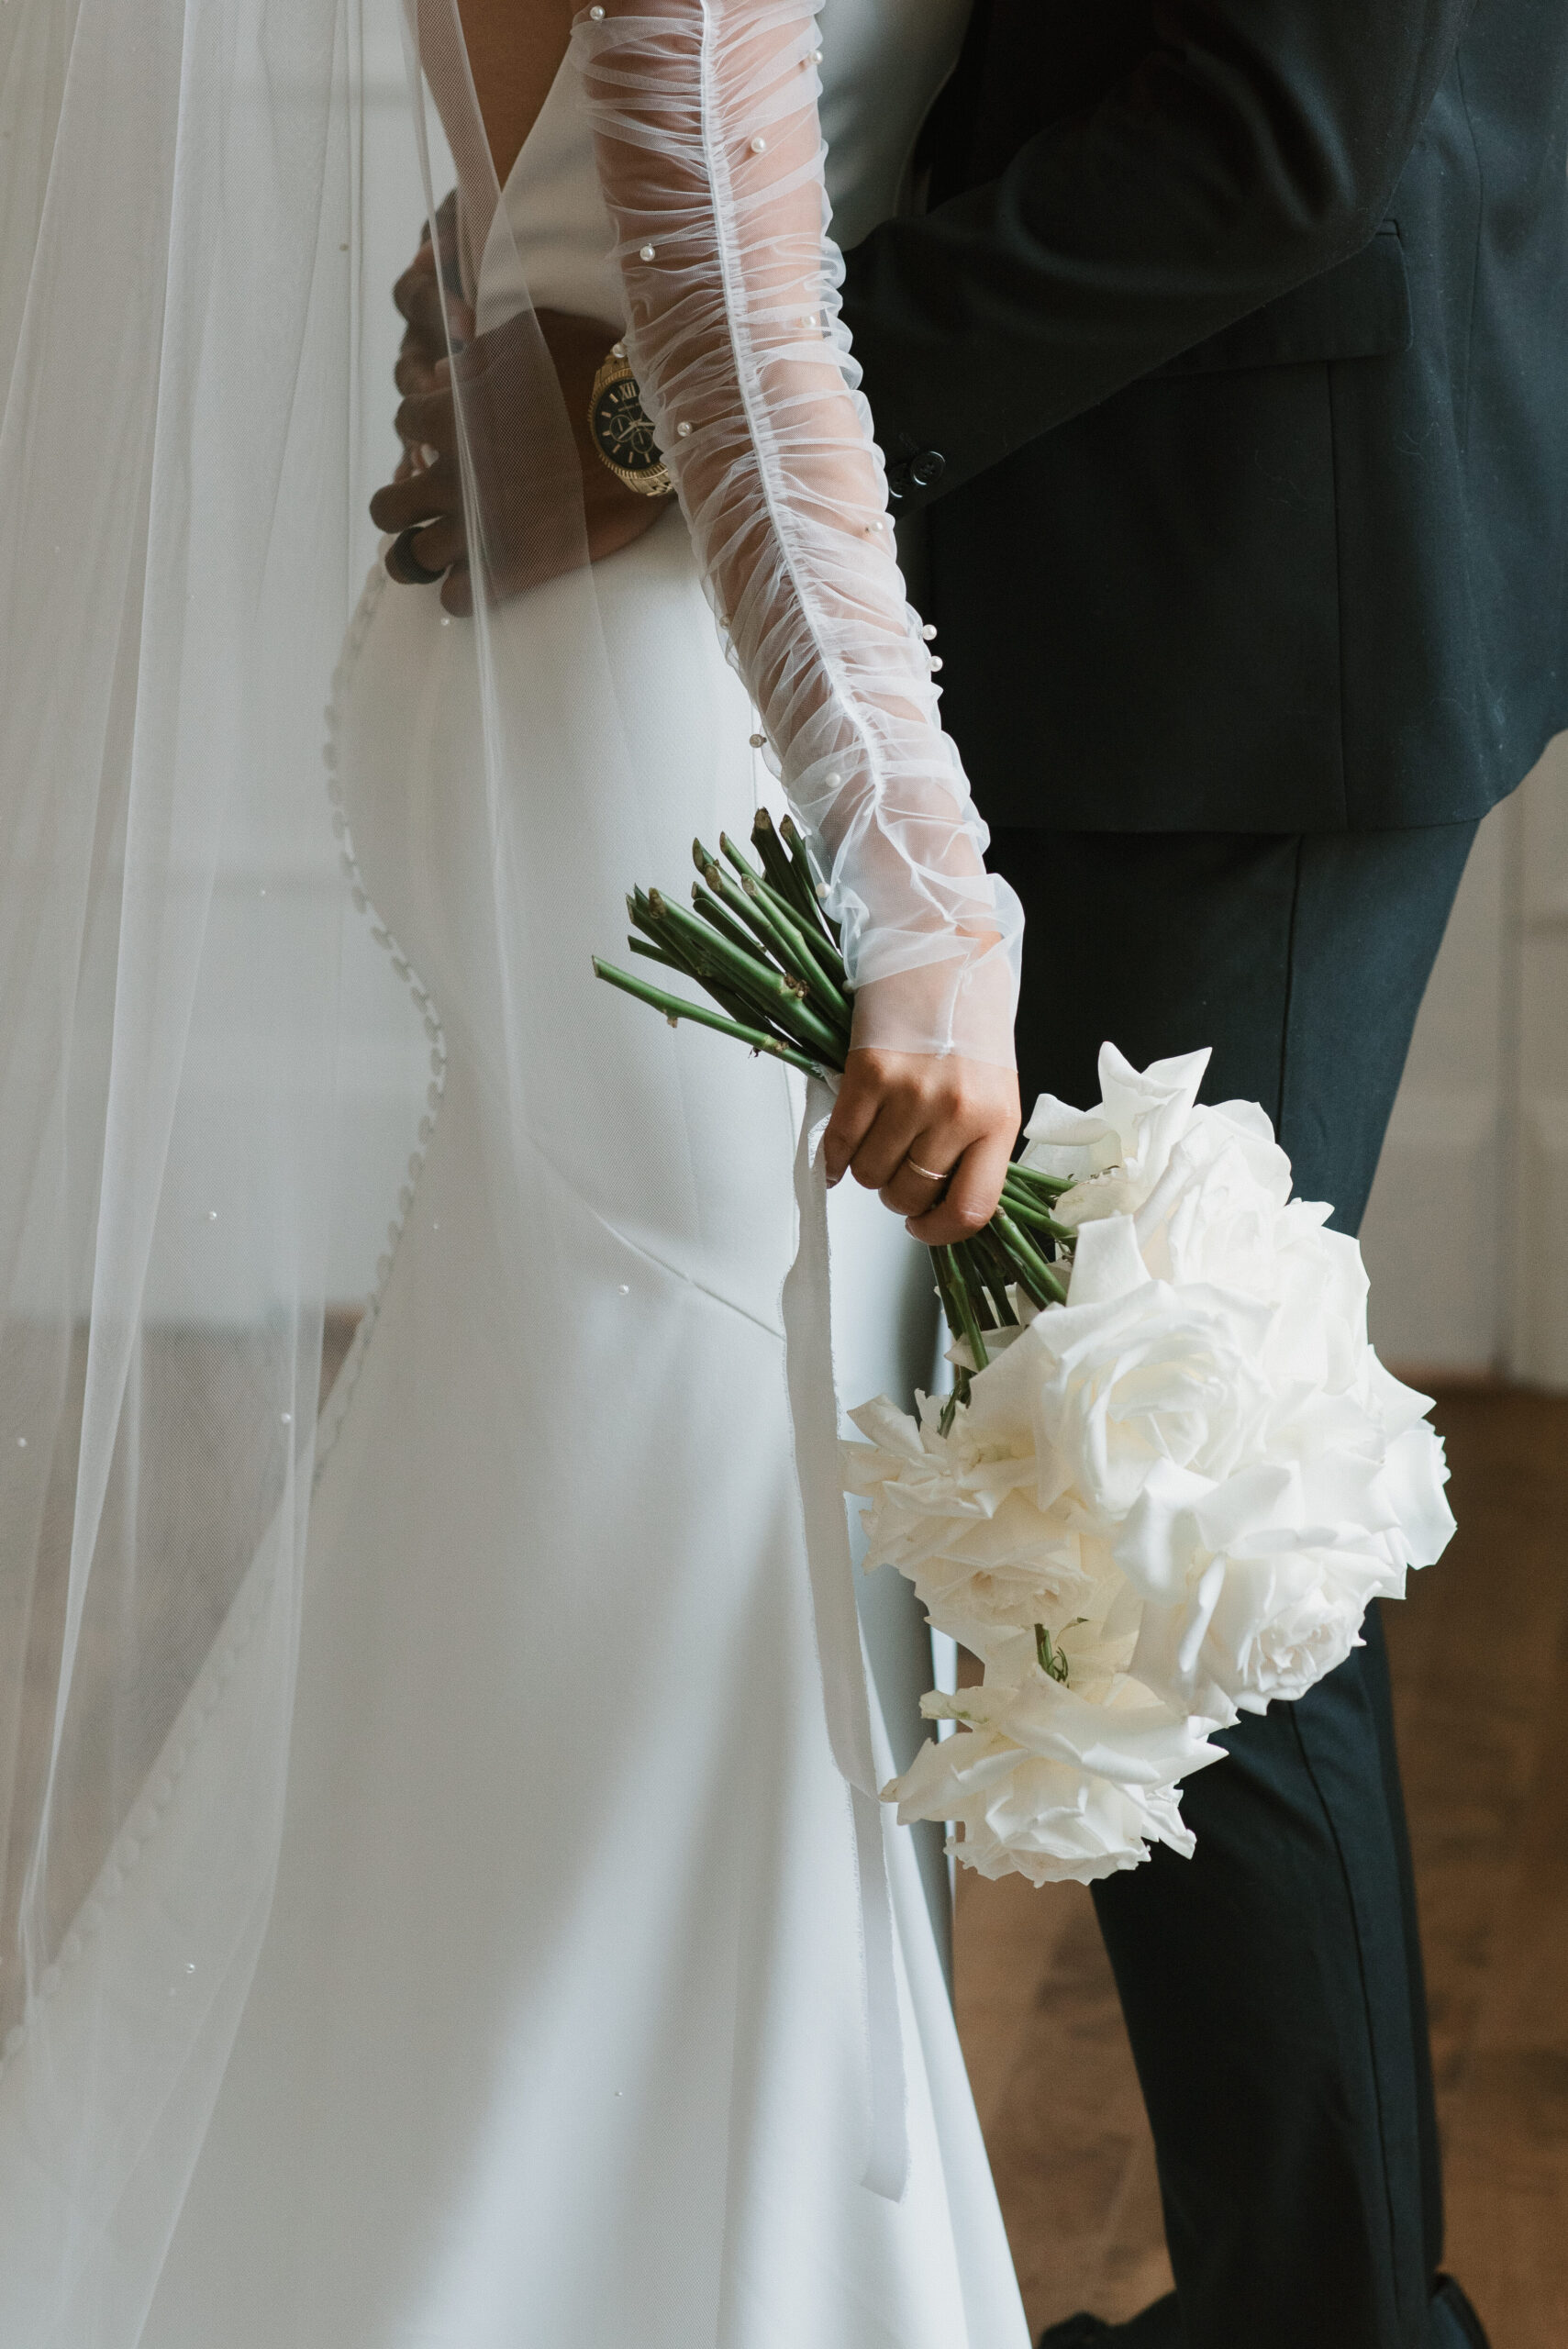 brides luxury wedding dress with gloves details 